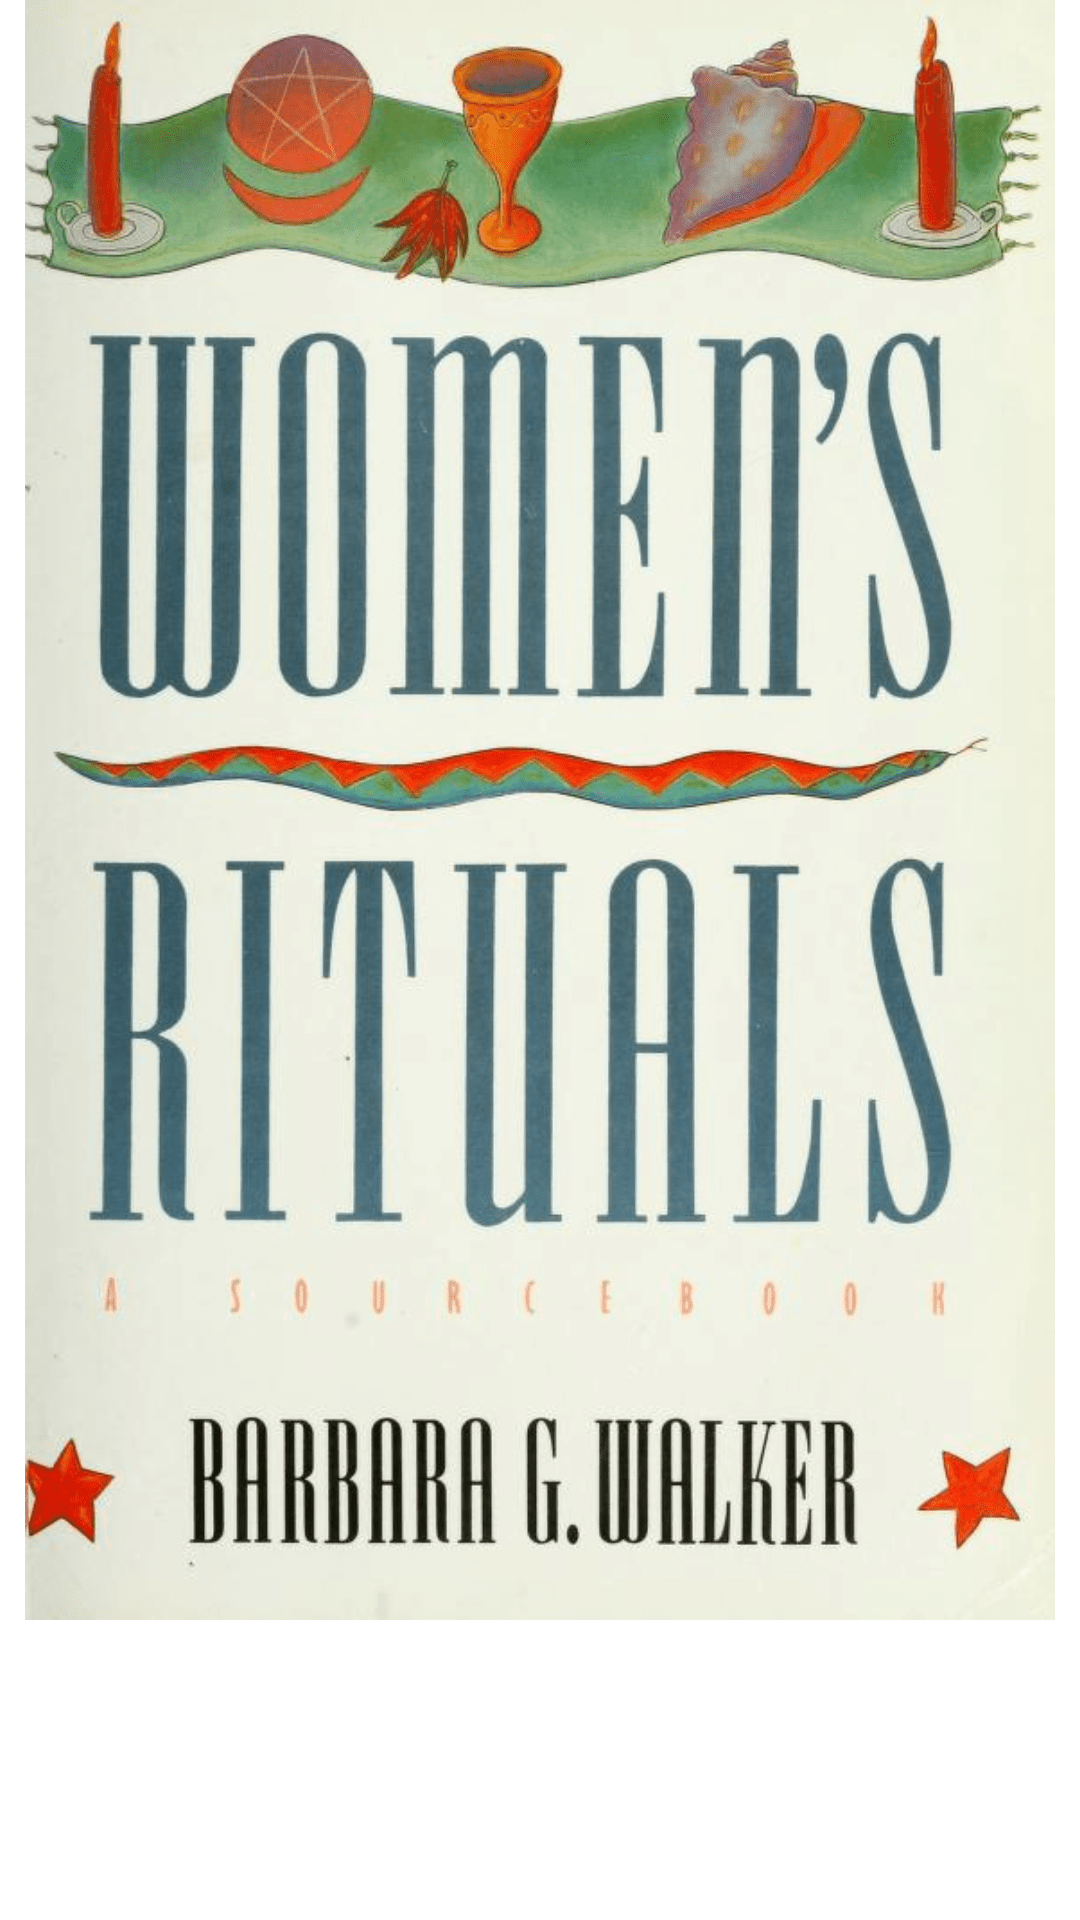 Women's Rituals by Barbara G. Walker